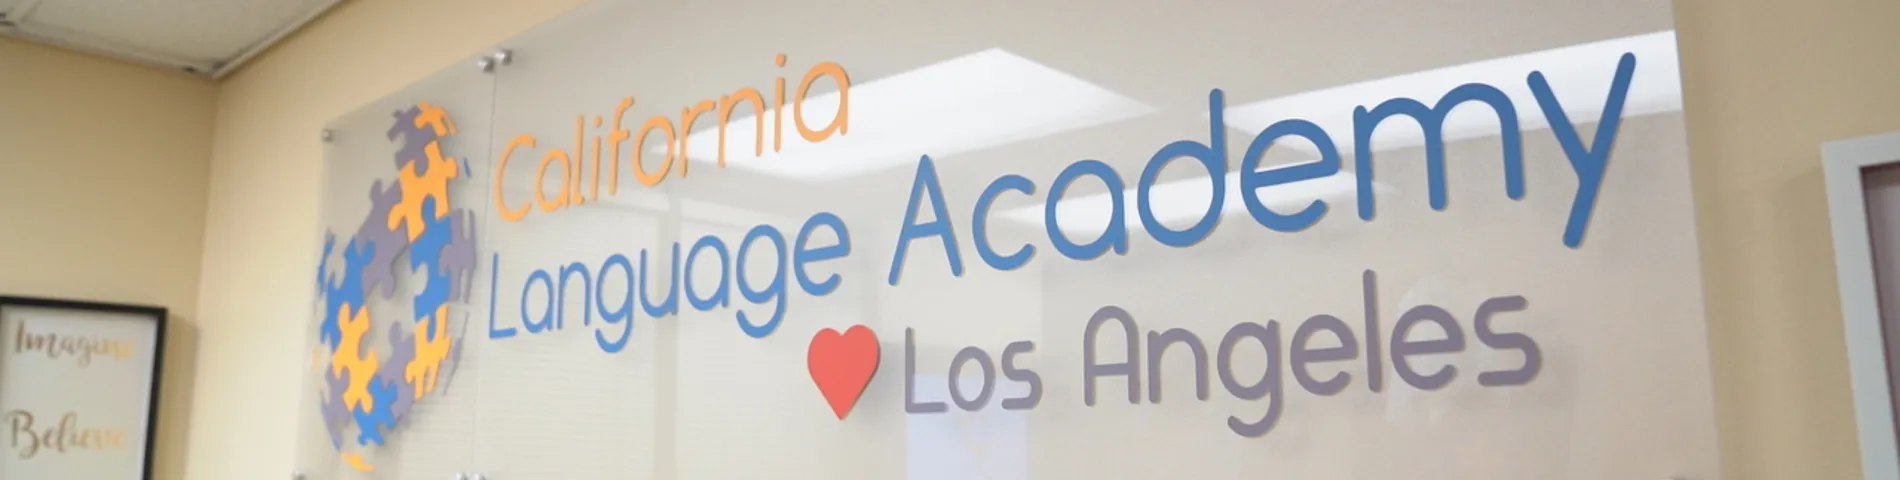 California Language Academy зображення 1